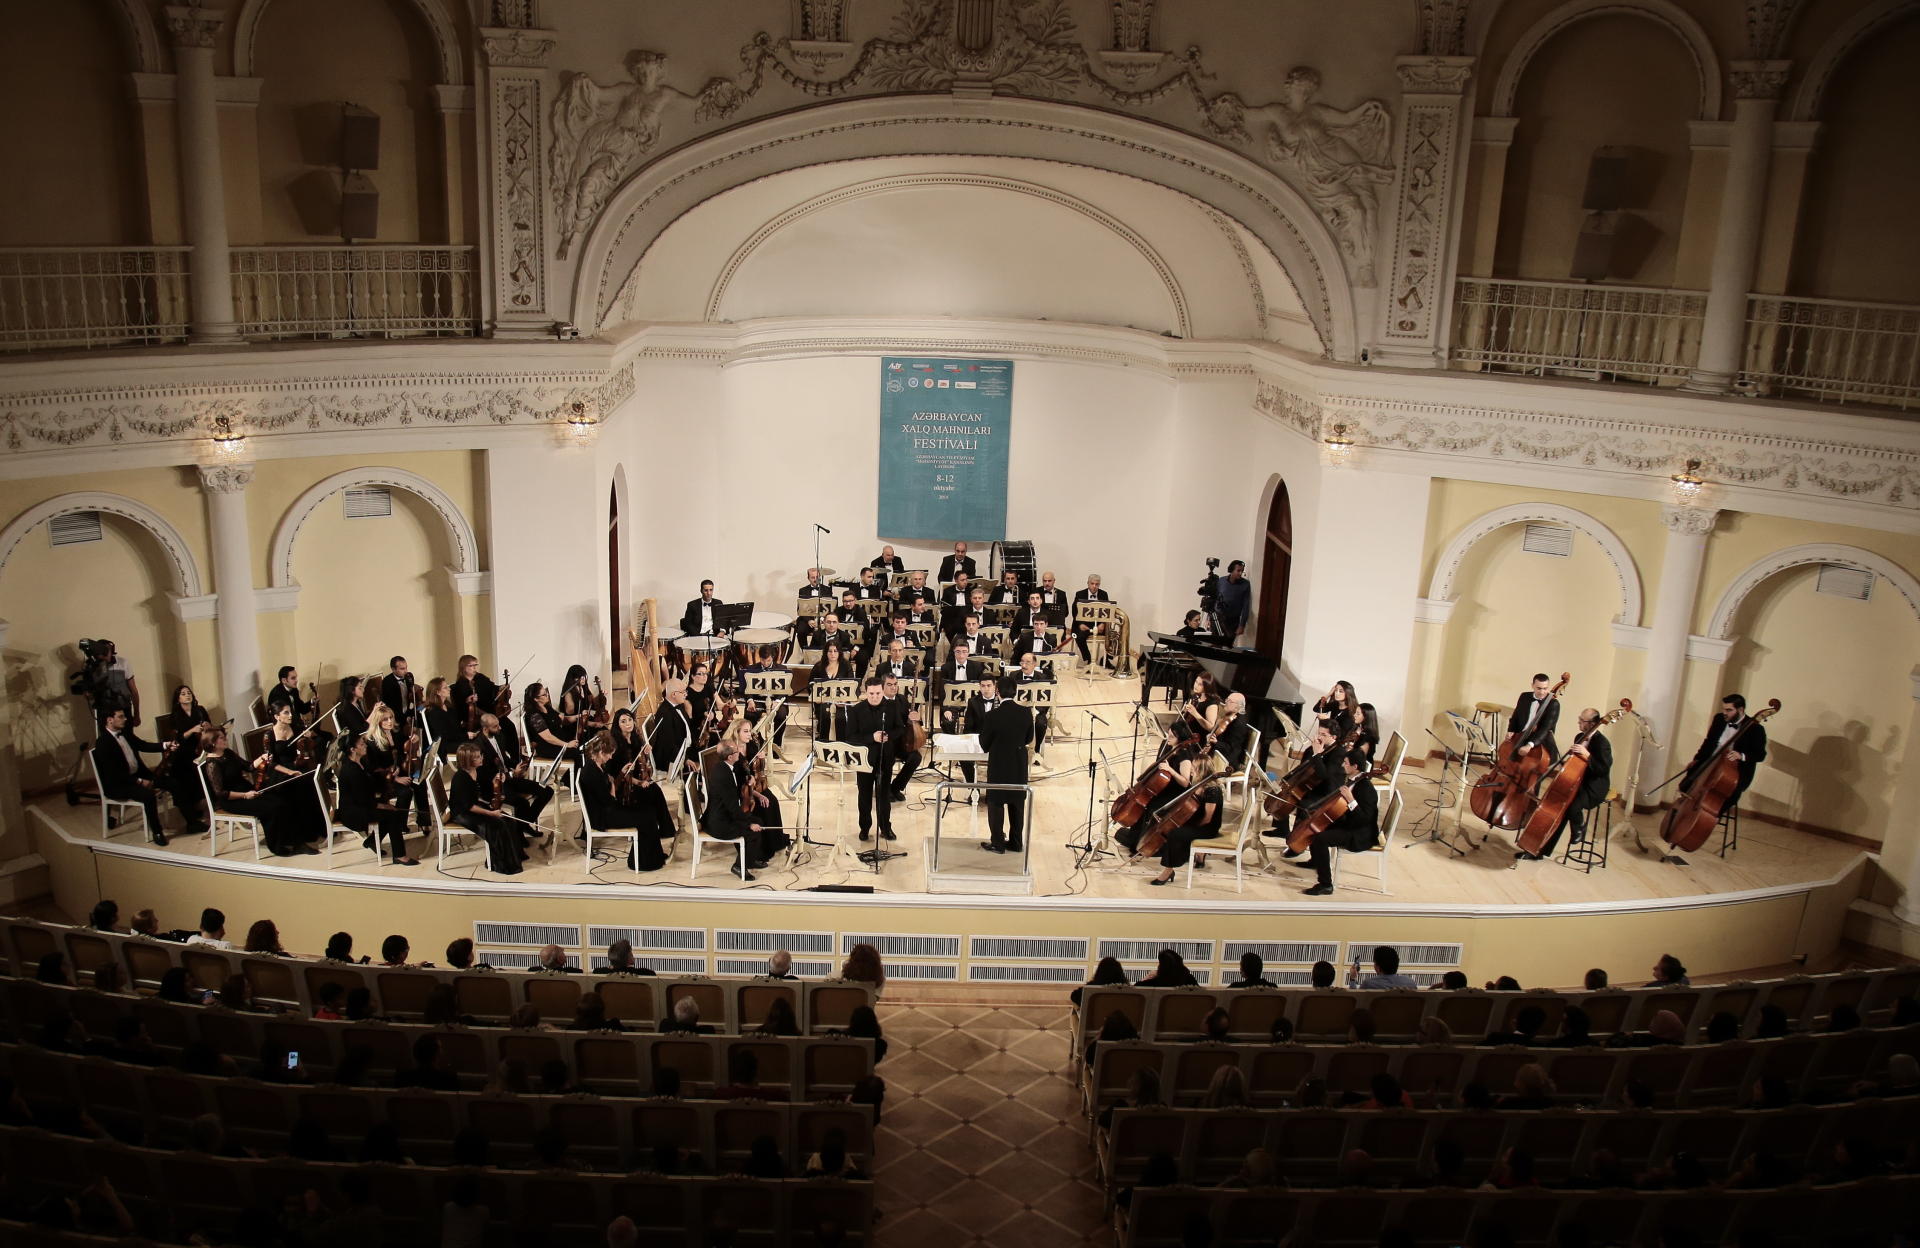 В Баку состоялось закрытие Фестиваля народных песен (ФОТО)